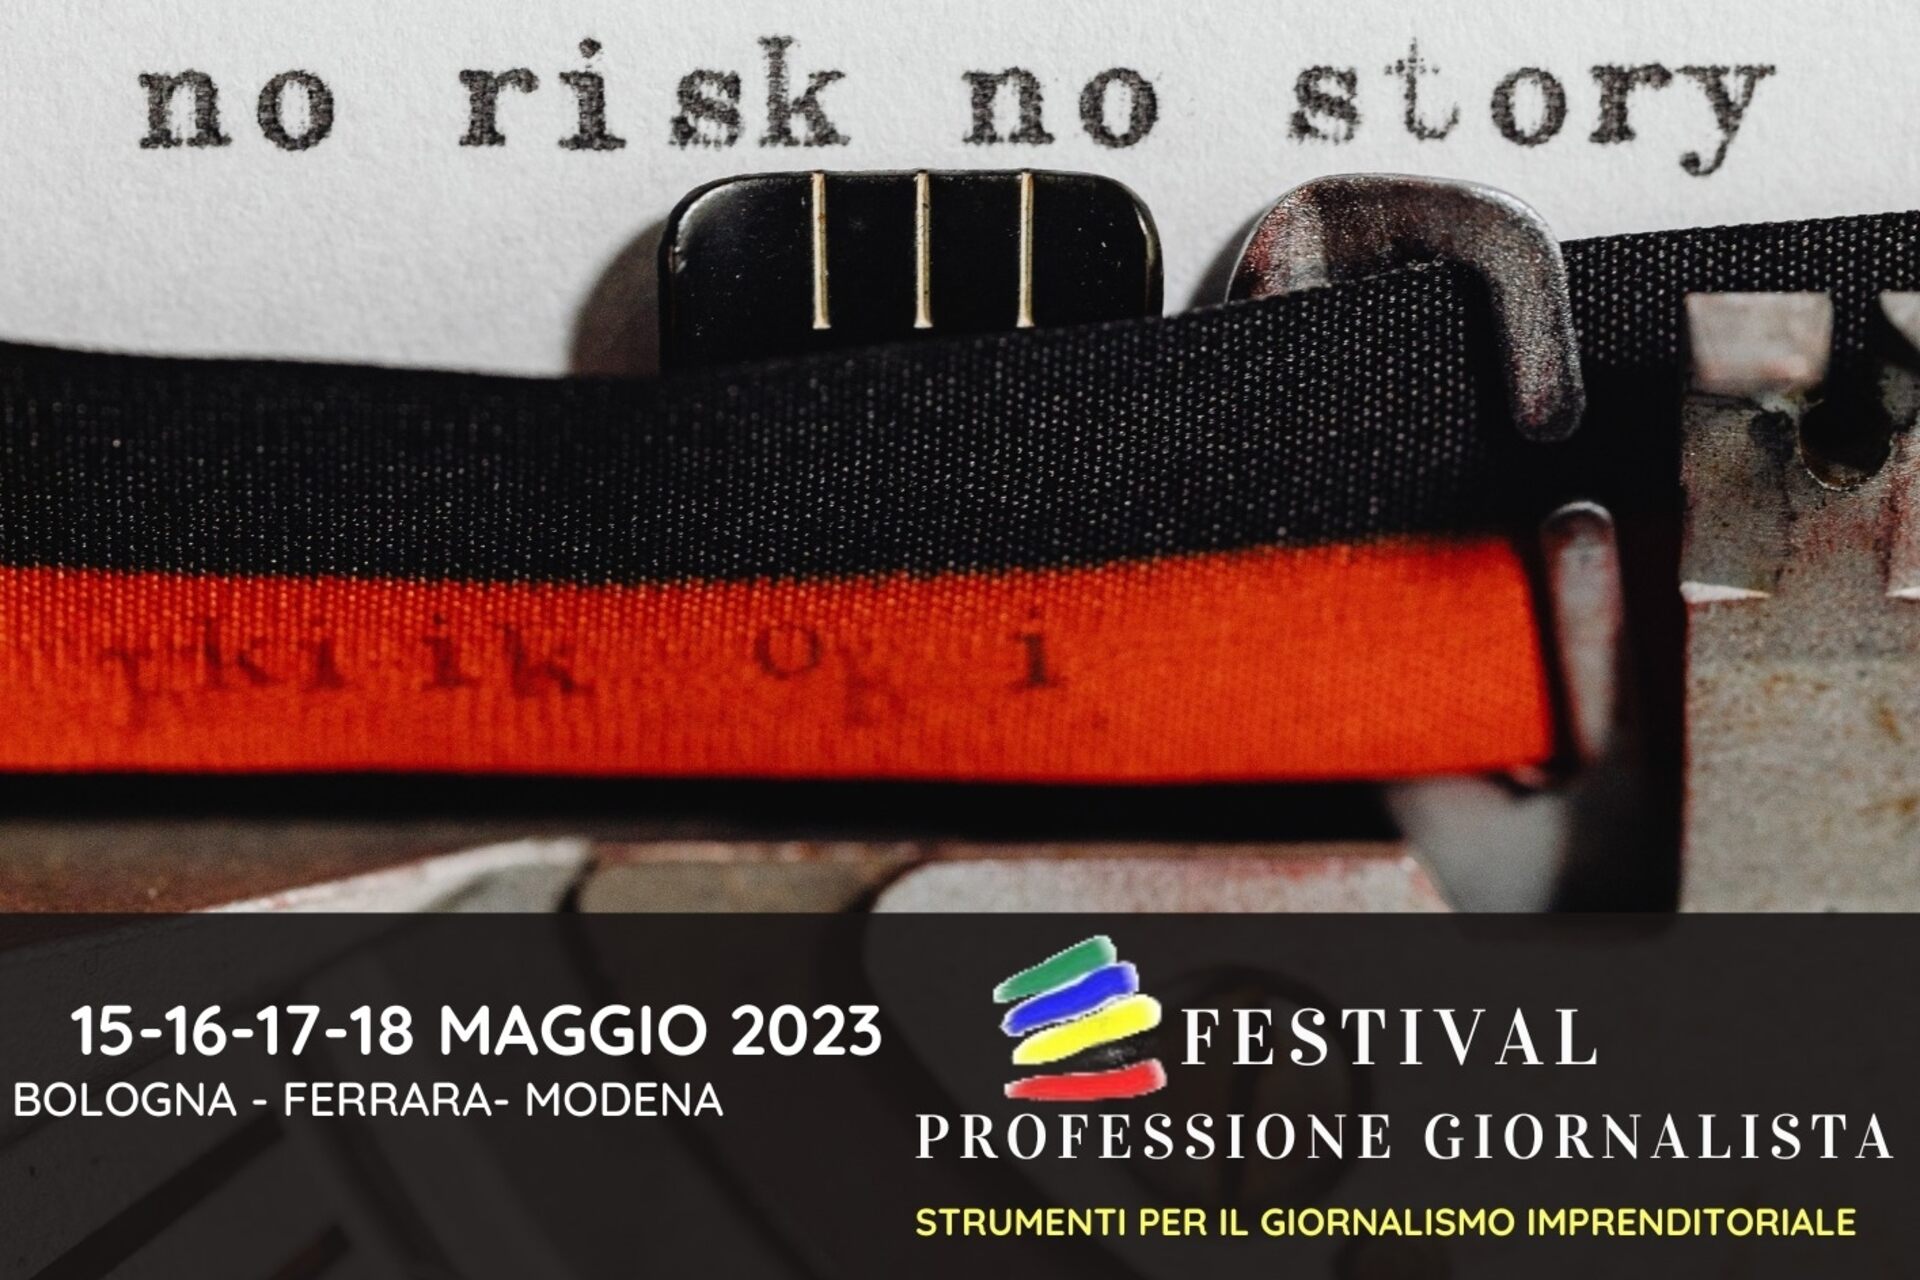 Լրագրողի մասնագիտությունը. «Professione Giornalista» փառատոնի 2023 թվականի թողարկման առանցքային վիզուալը (Բոլոնիա, Ֆերարա, Մոդենա, մայիսի 15-16-17-18)